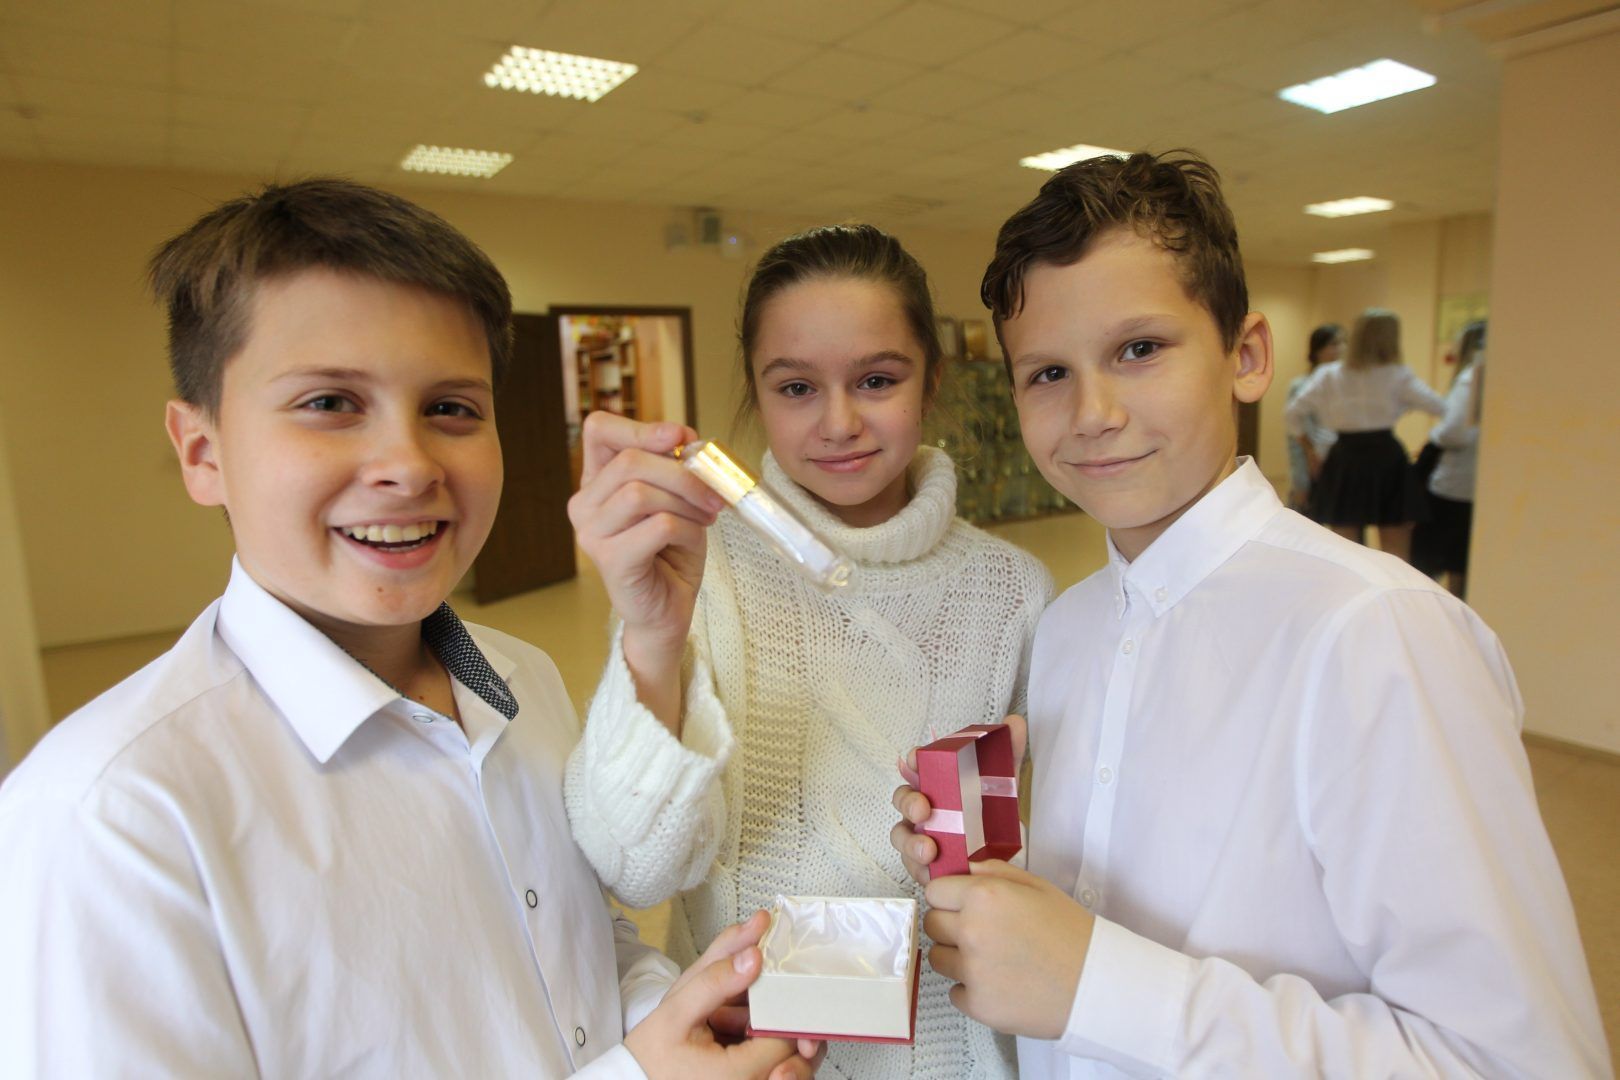 Ученики младших классов школы №1392 тоже хотели бы принять участие в церемонии закладки капсулы. Фото: Владимир Смоляков